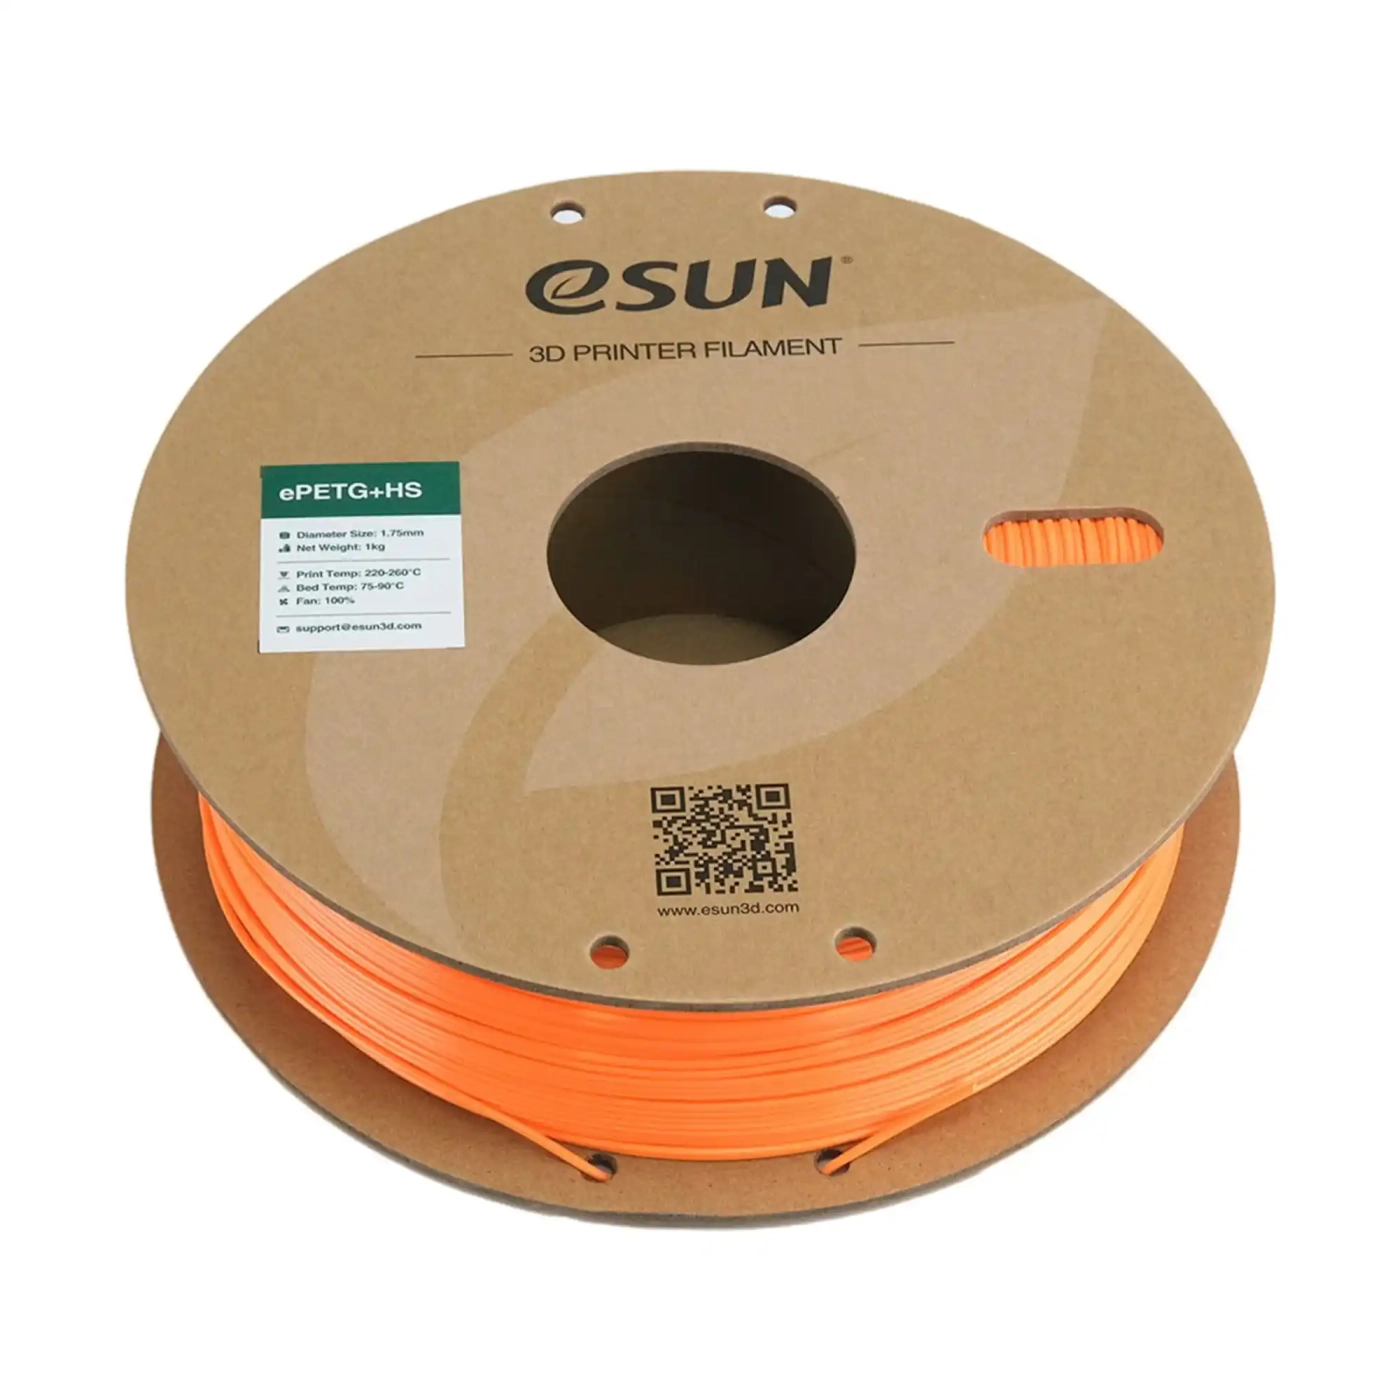 Купить ePETG+HS Filament (пластик) для 3D принтера Esun 1кг, 1.75мм, оранжевый (ePETG+HS-175SO1) - фото 3